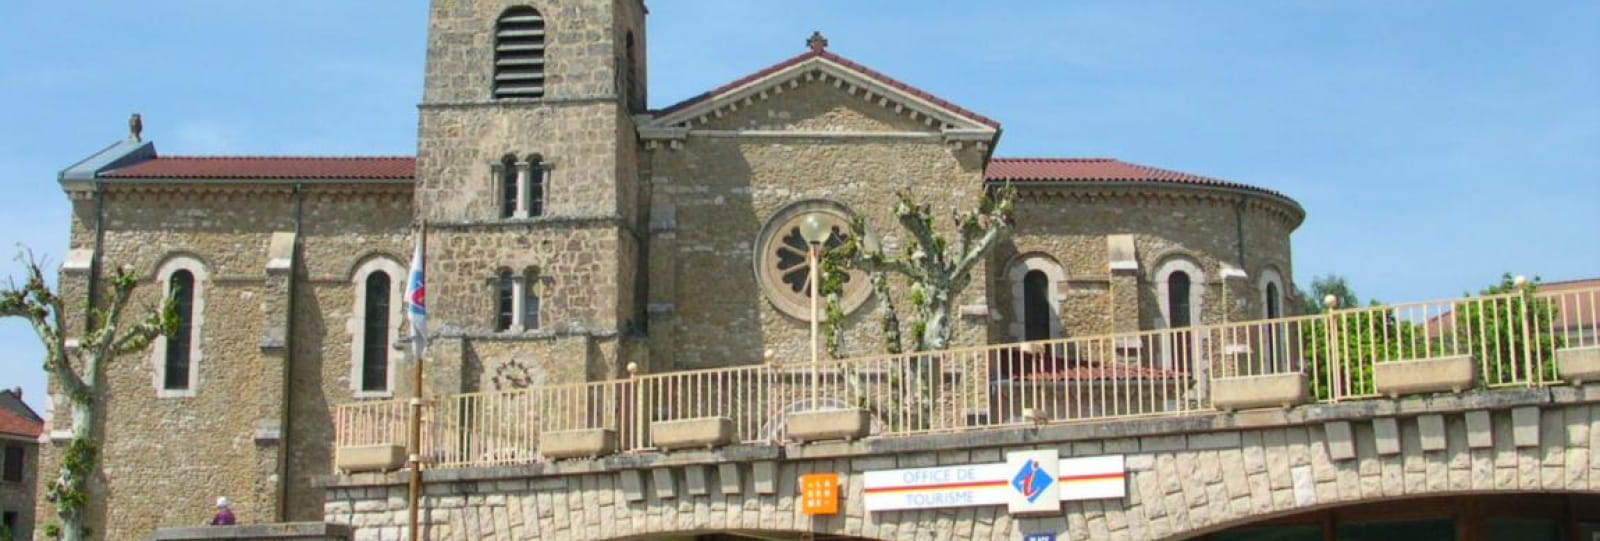 Office de Tourisme Vercors Drôme - Accueil de la Chapelle en Vercors